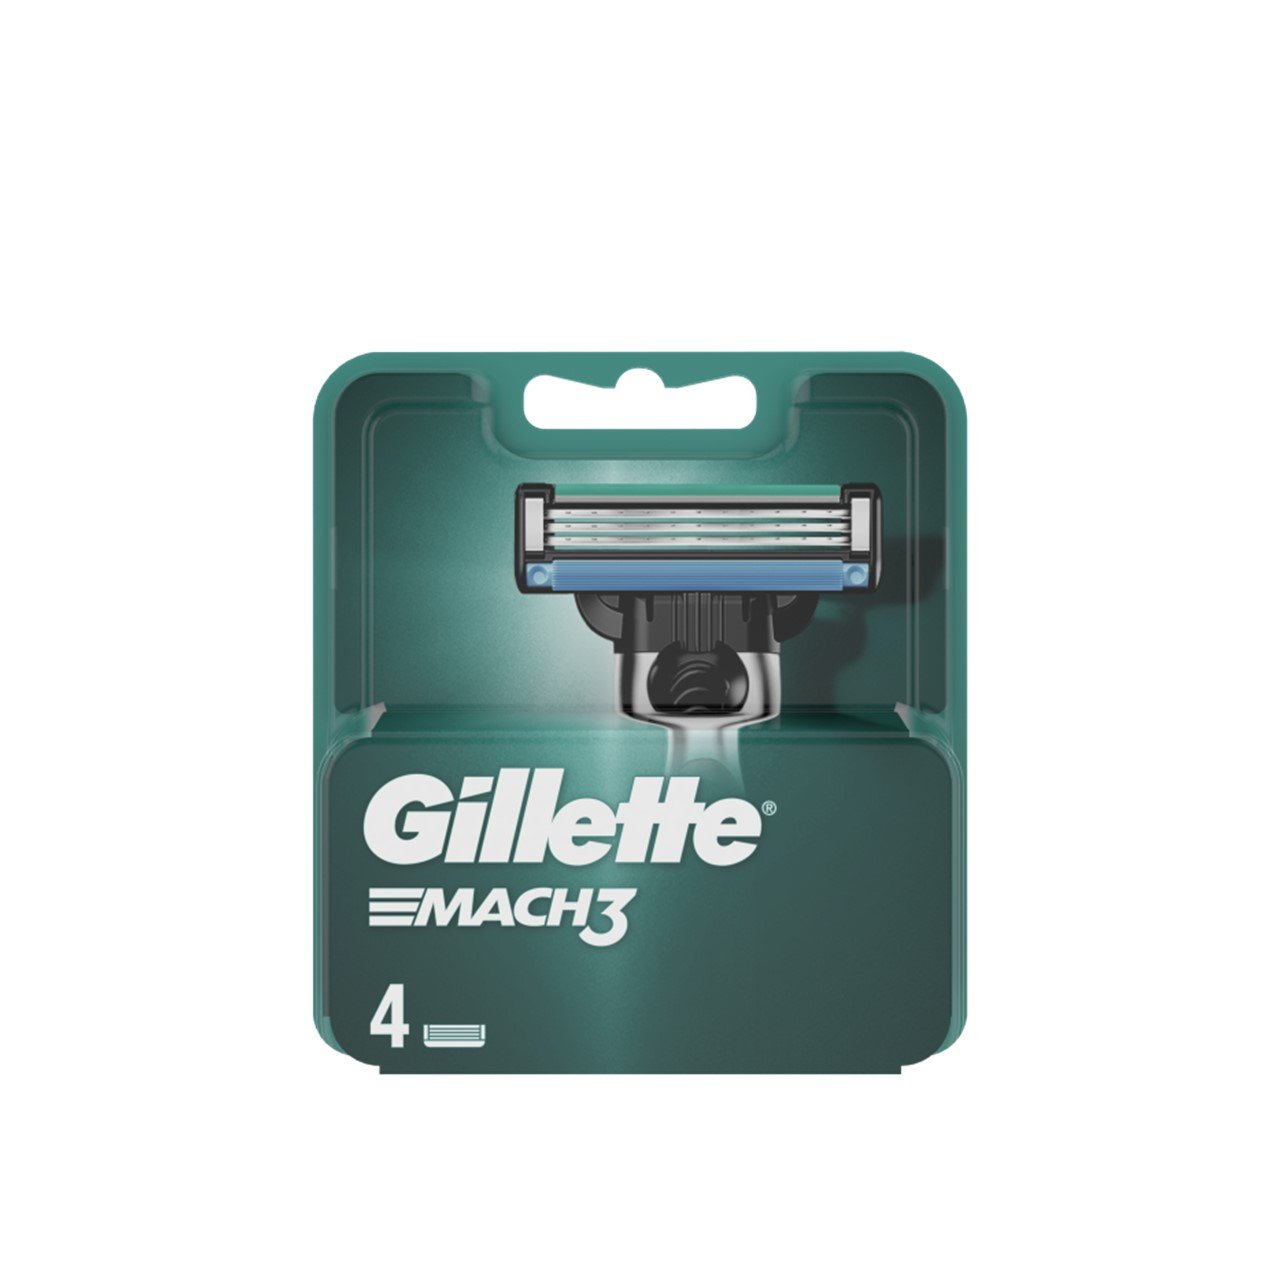 Gillette Mach3 Replacement Razor Blades x4